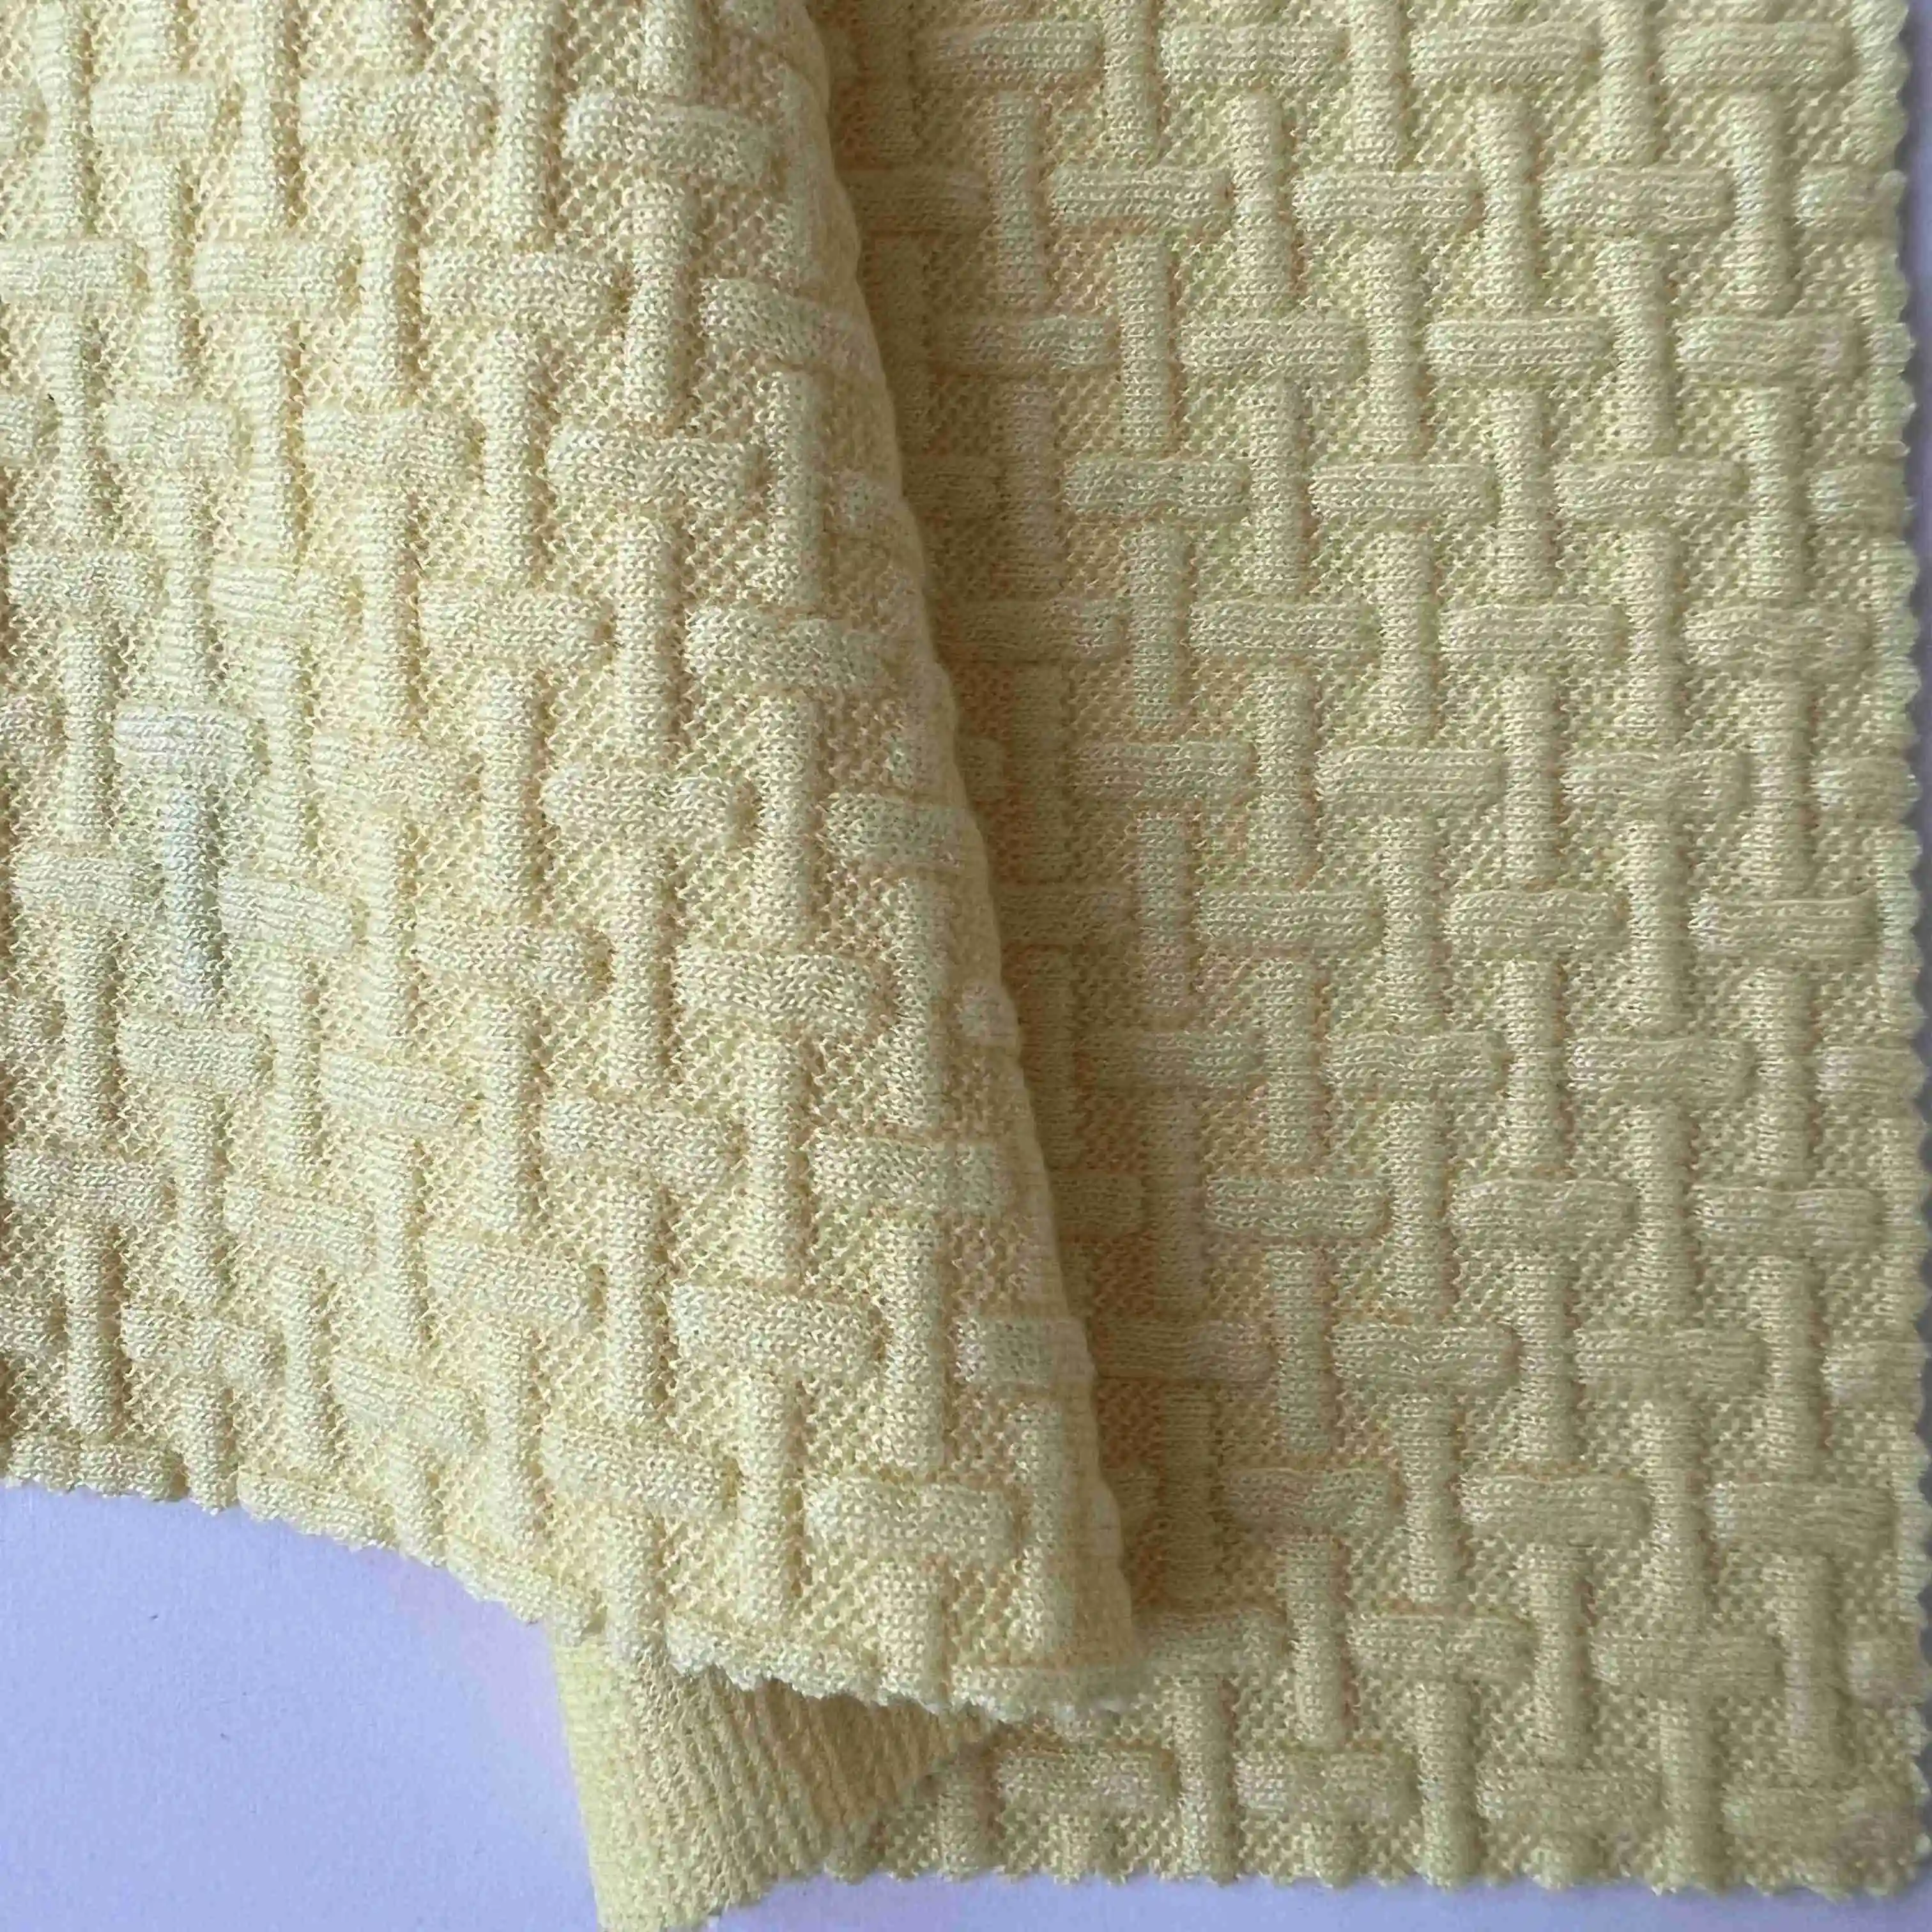 Bonne qualité textile matière première teint extensible moelleux tricot pull-over polyester spandex jacquard tissu à tricoter pour vêtements